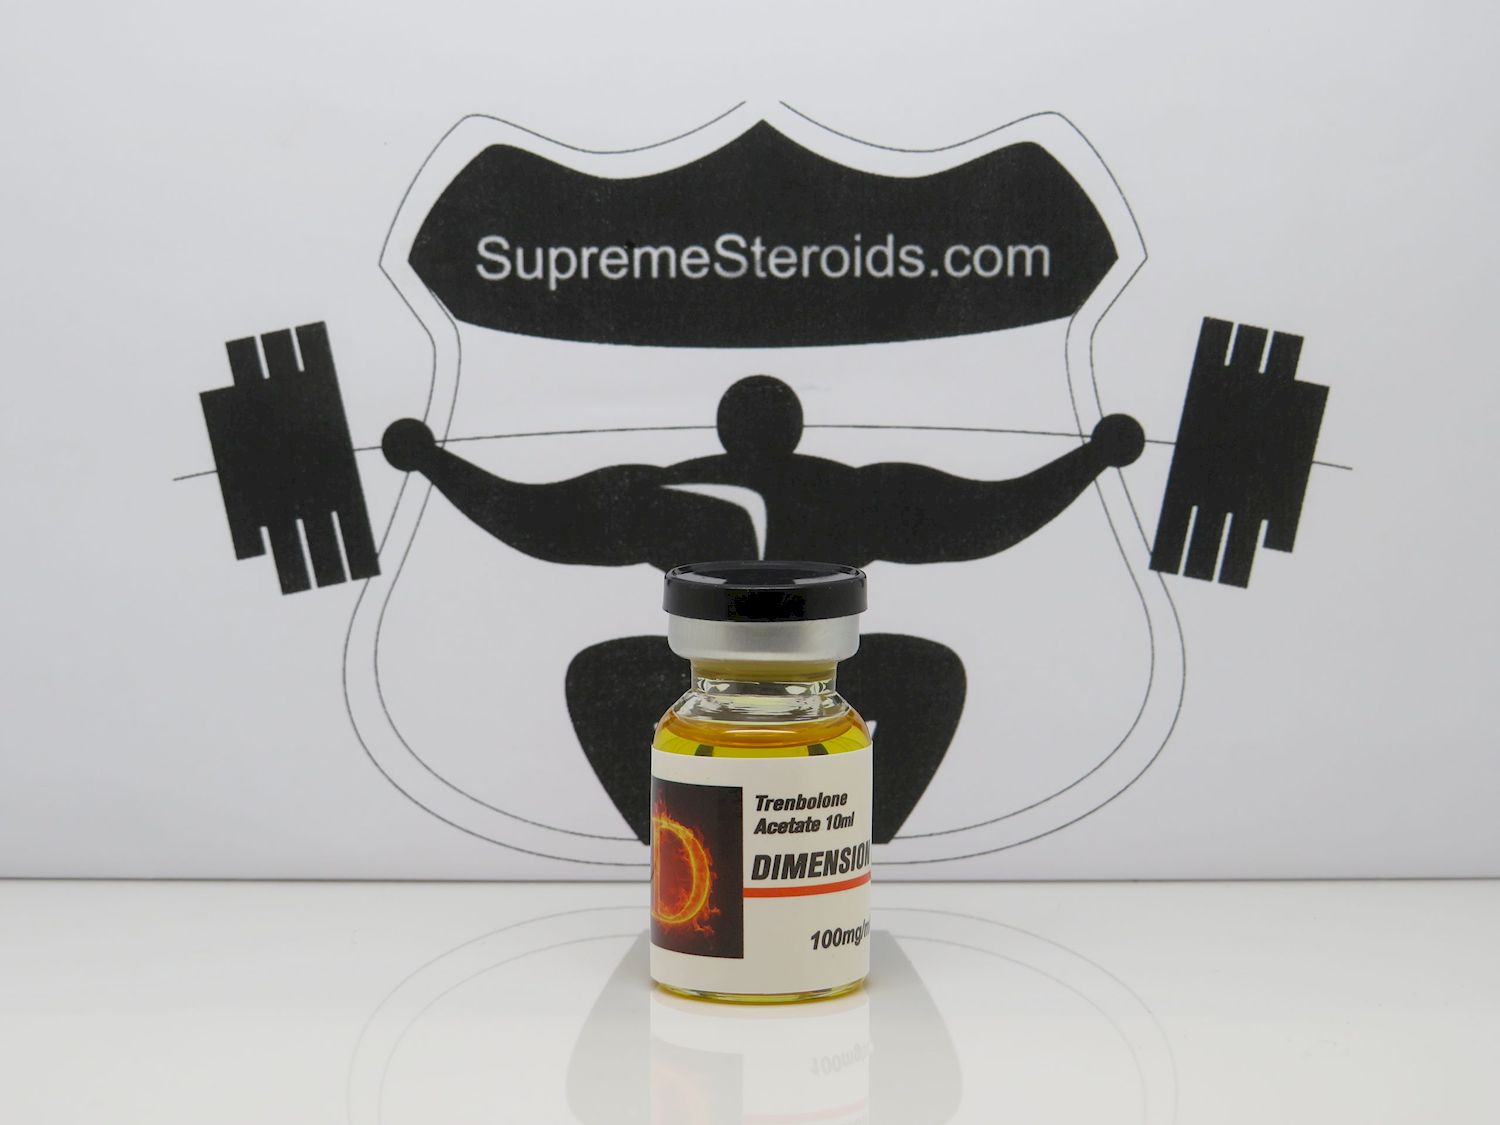 arnold schwarzenegger steroids Resources: website